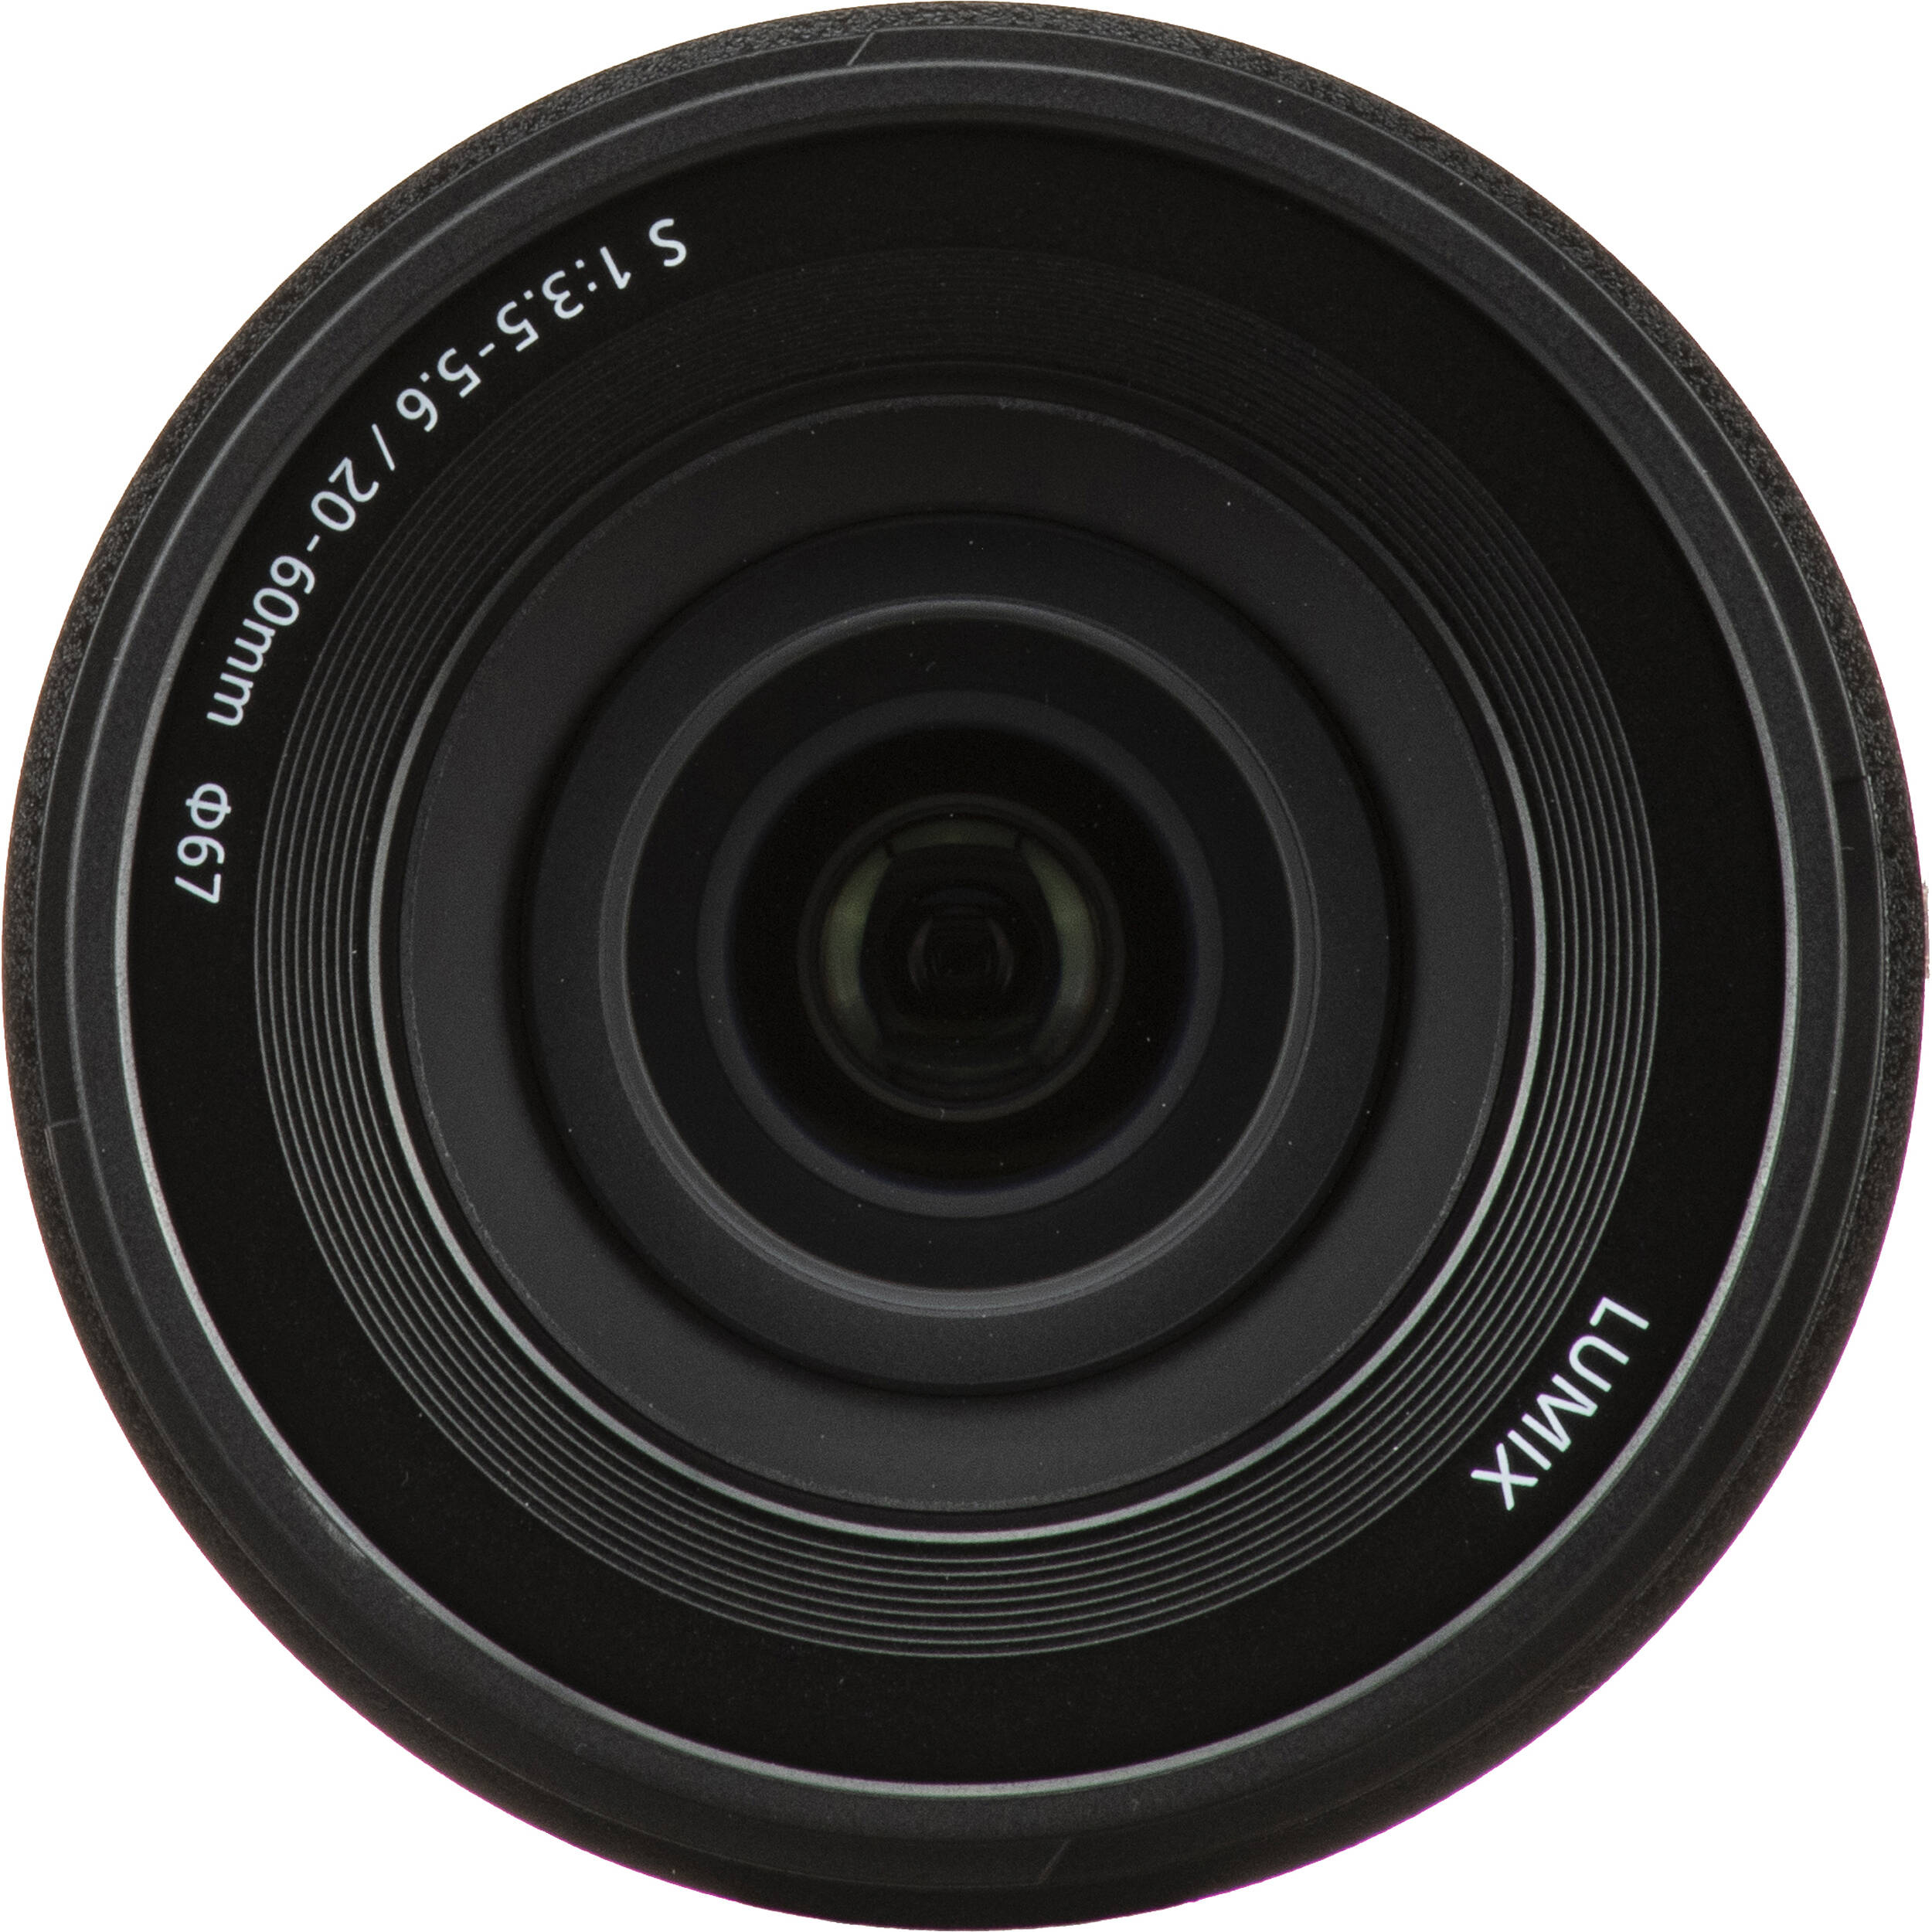 Фотоапарат Panasonic Lumix DC-S9 + 20-60mm f/3.5-5.6 Dark Olive (DC-S9KE-G)фото15